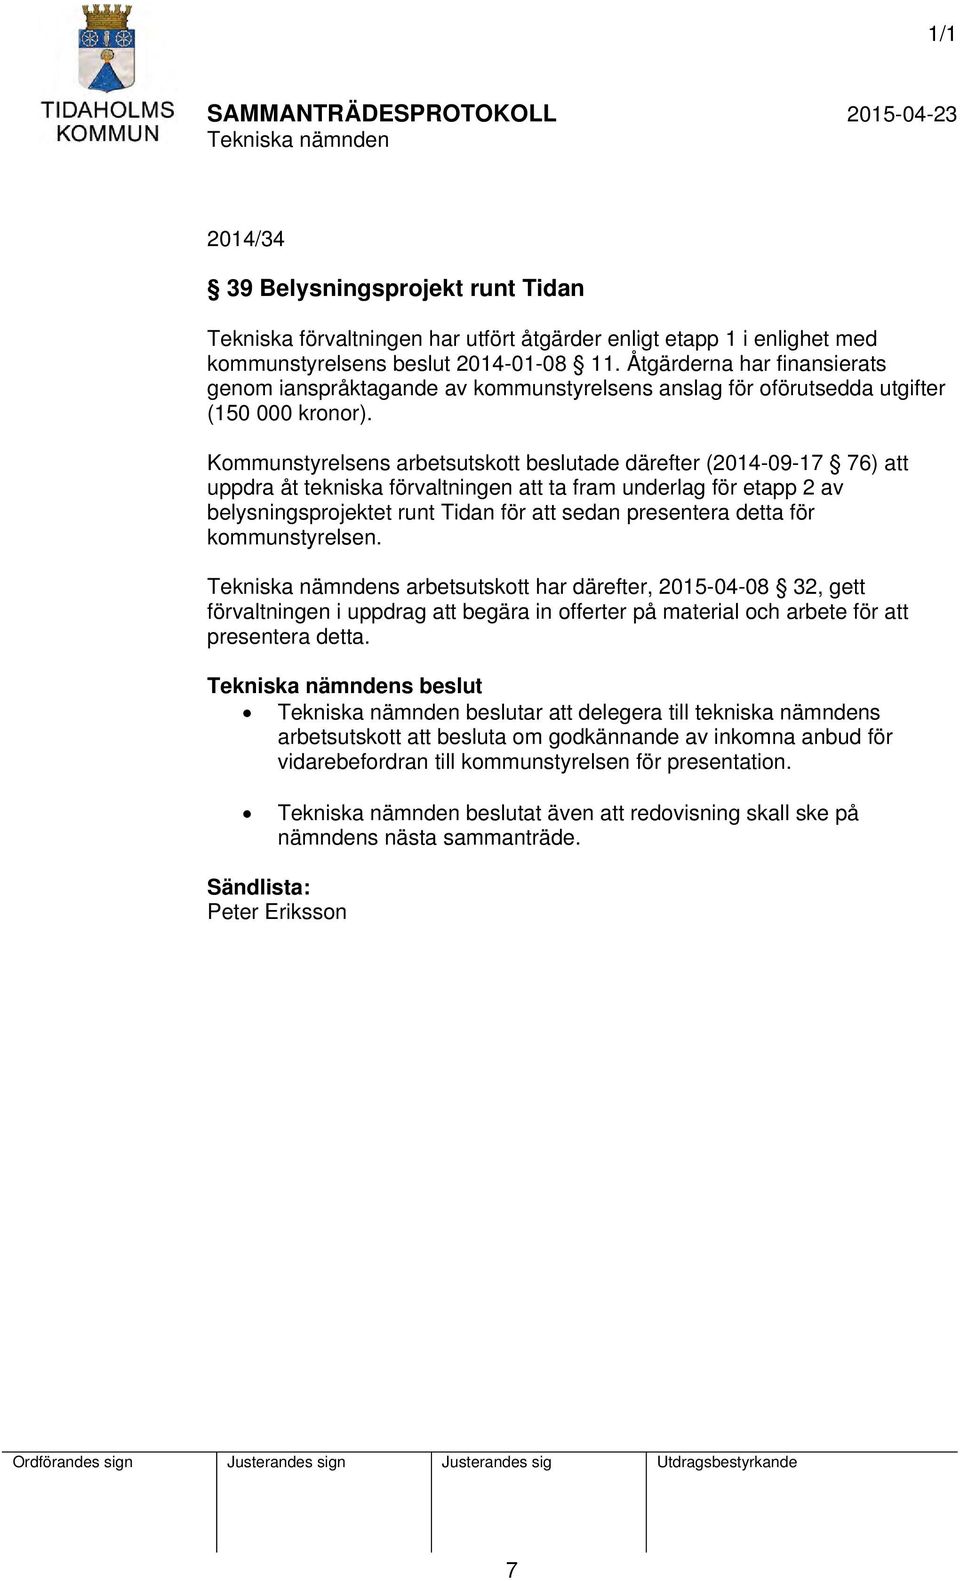 Kommunstyrelsens arbetsutskott beslutade därefter (2014-09-17 76) att uppdra åt tekniska förvaltningen att ta fram underlag för etapp 2 av belysningsprojektet runt Tidan för att sedan presentera